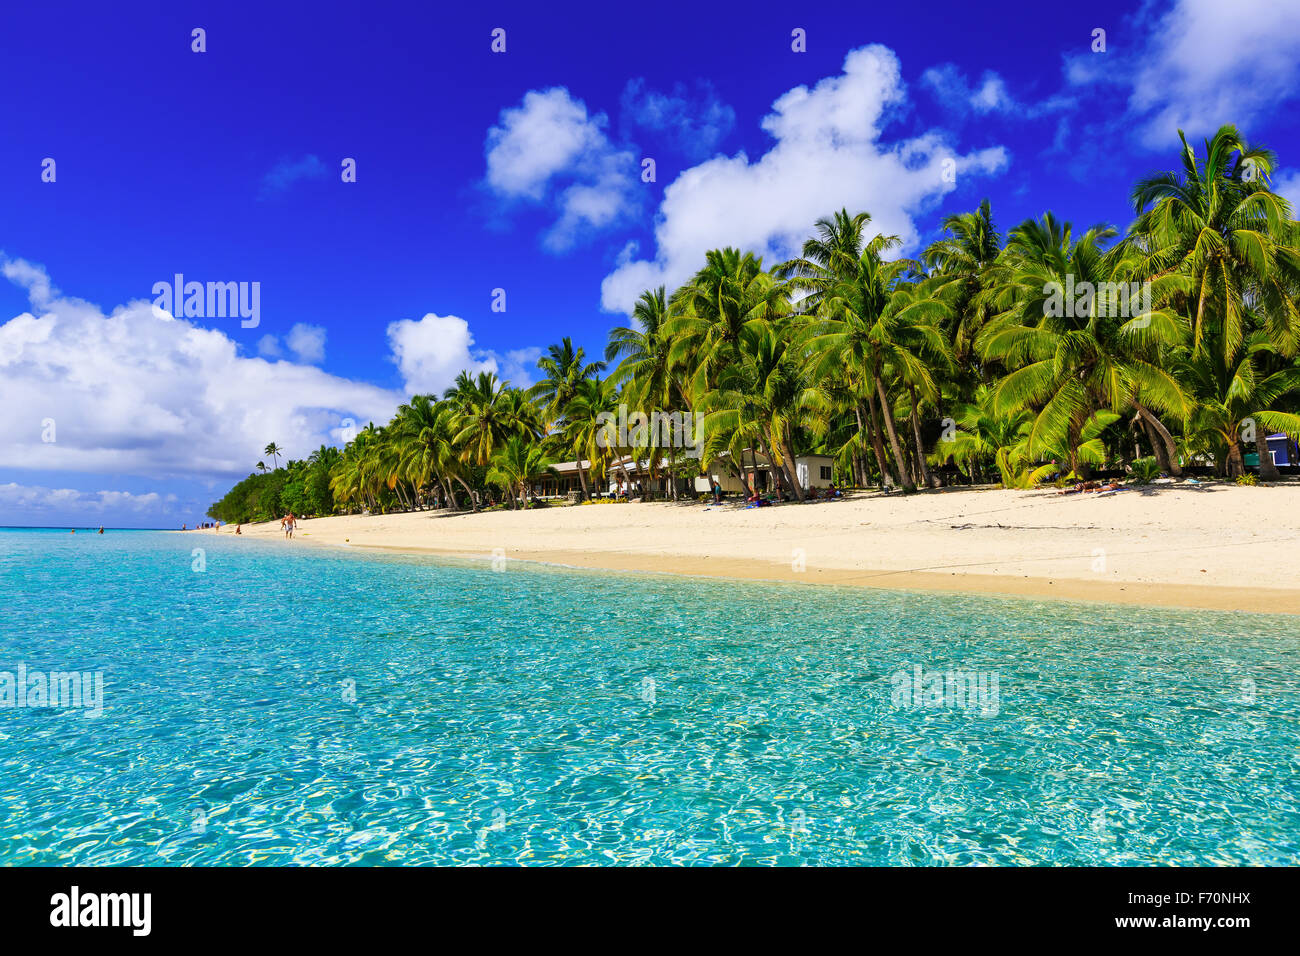 Plage sur l'île tropicale d'eau bleue et claire. Dravuni Island (Fidji). Banque D'Images